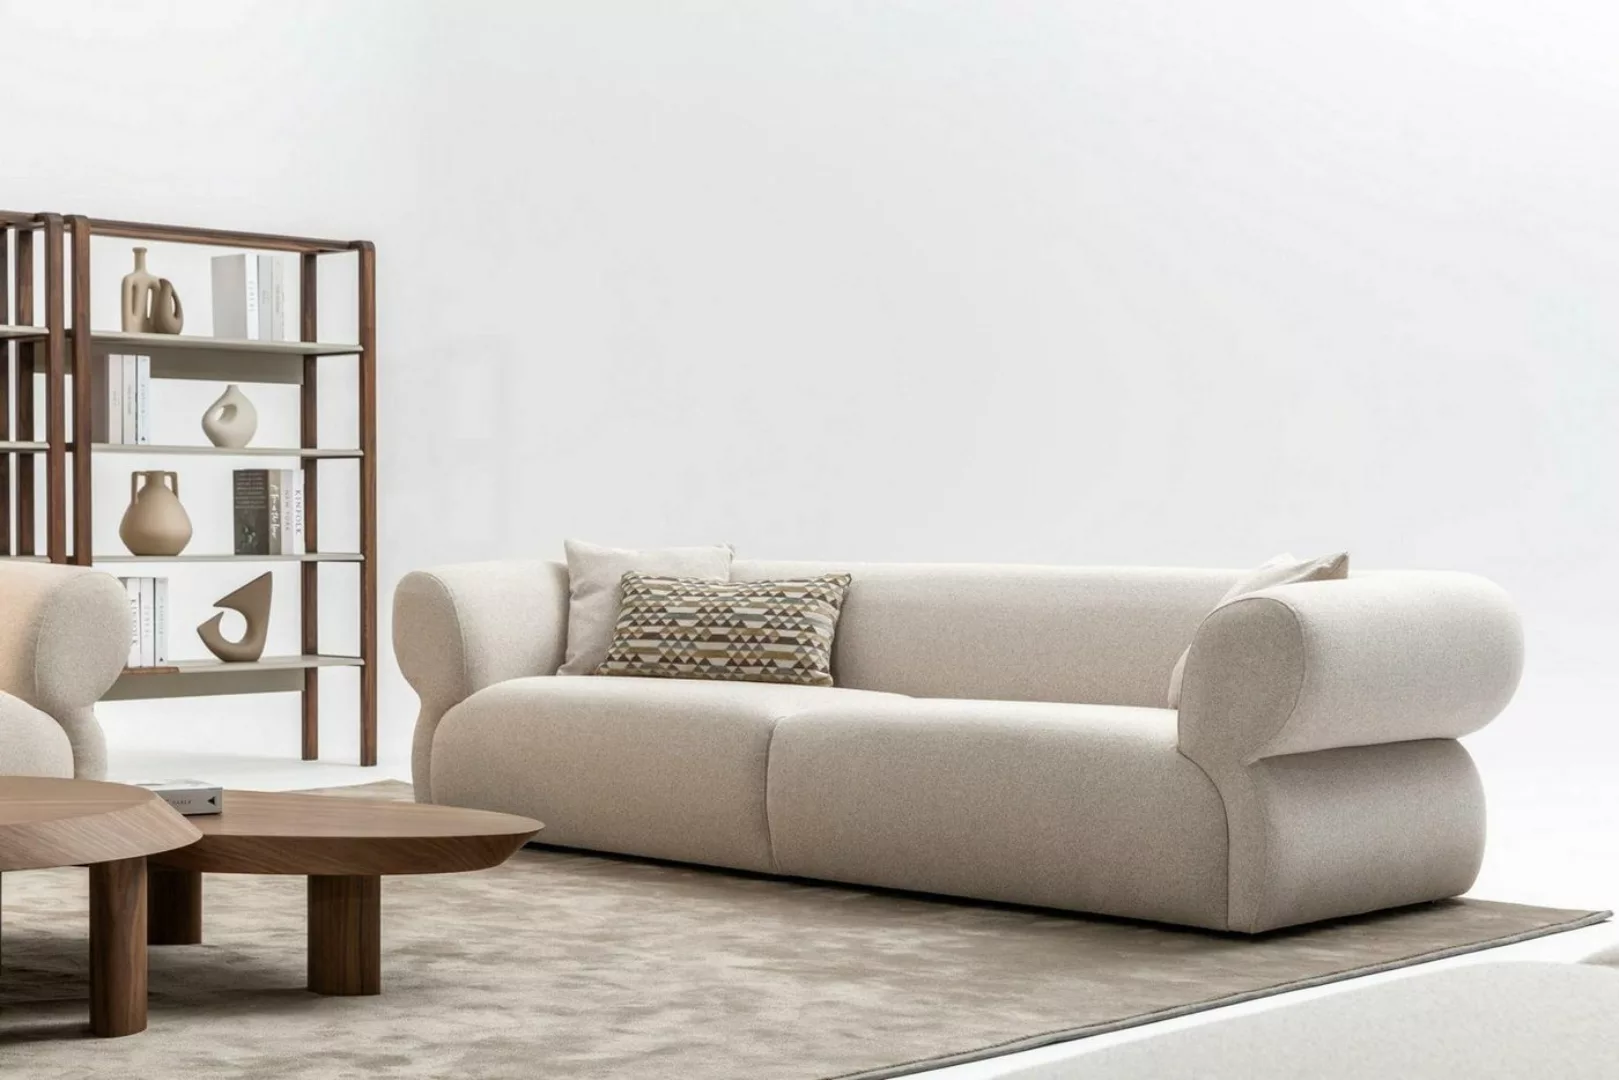 JVmoebel 3-Sitzer Beige Sofa 3 Sitzer big 250cm Sofas Couch Luxus Möbel Neu günstig online kaufen